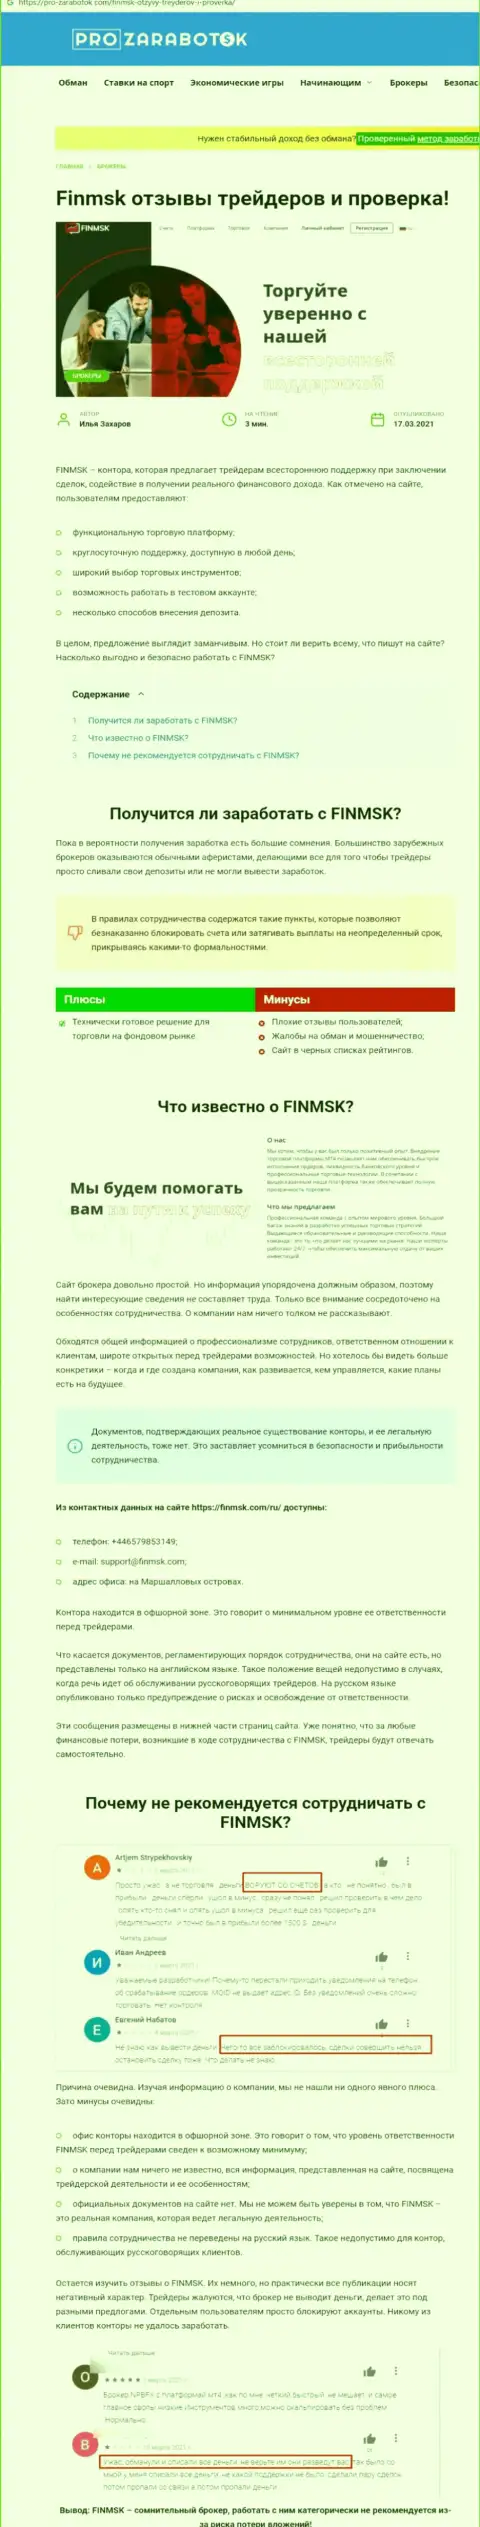 Чем чревато сотрудничество с компанией ФинМСК ? Обзорная публикация об интернет мошеннике